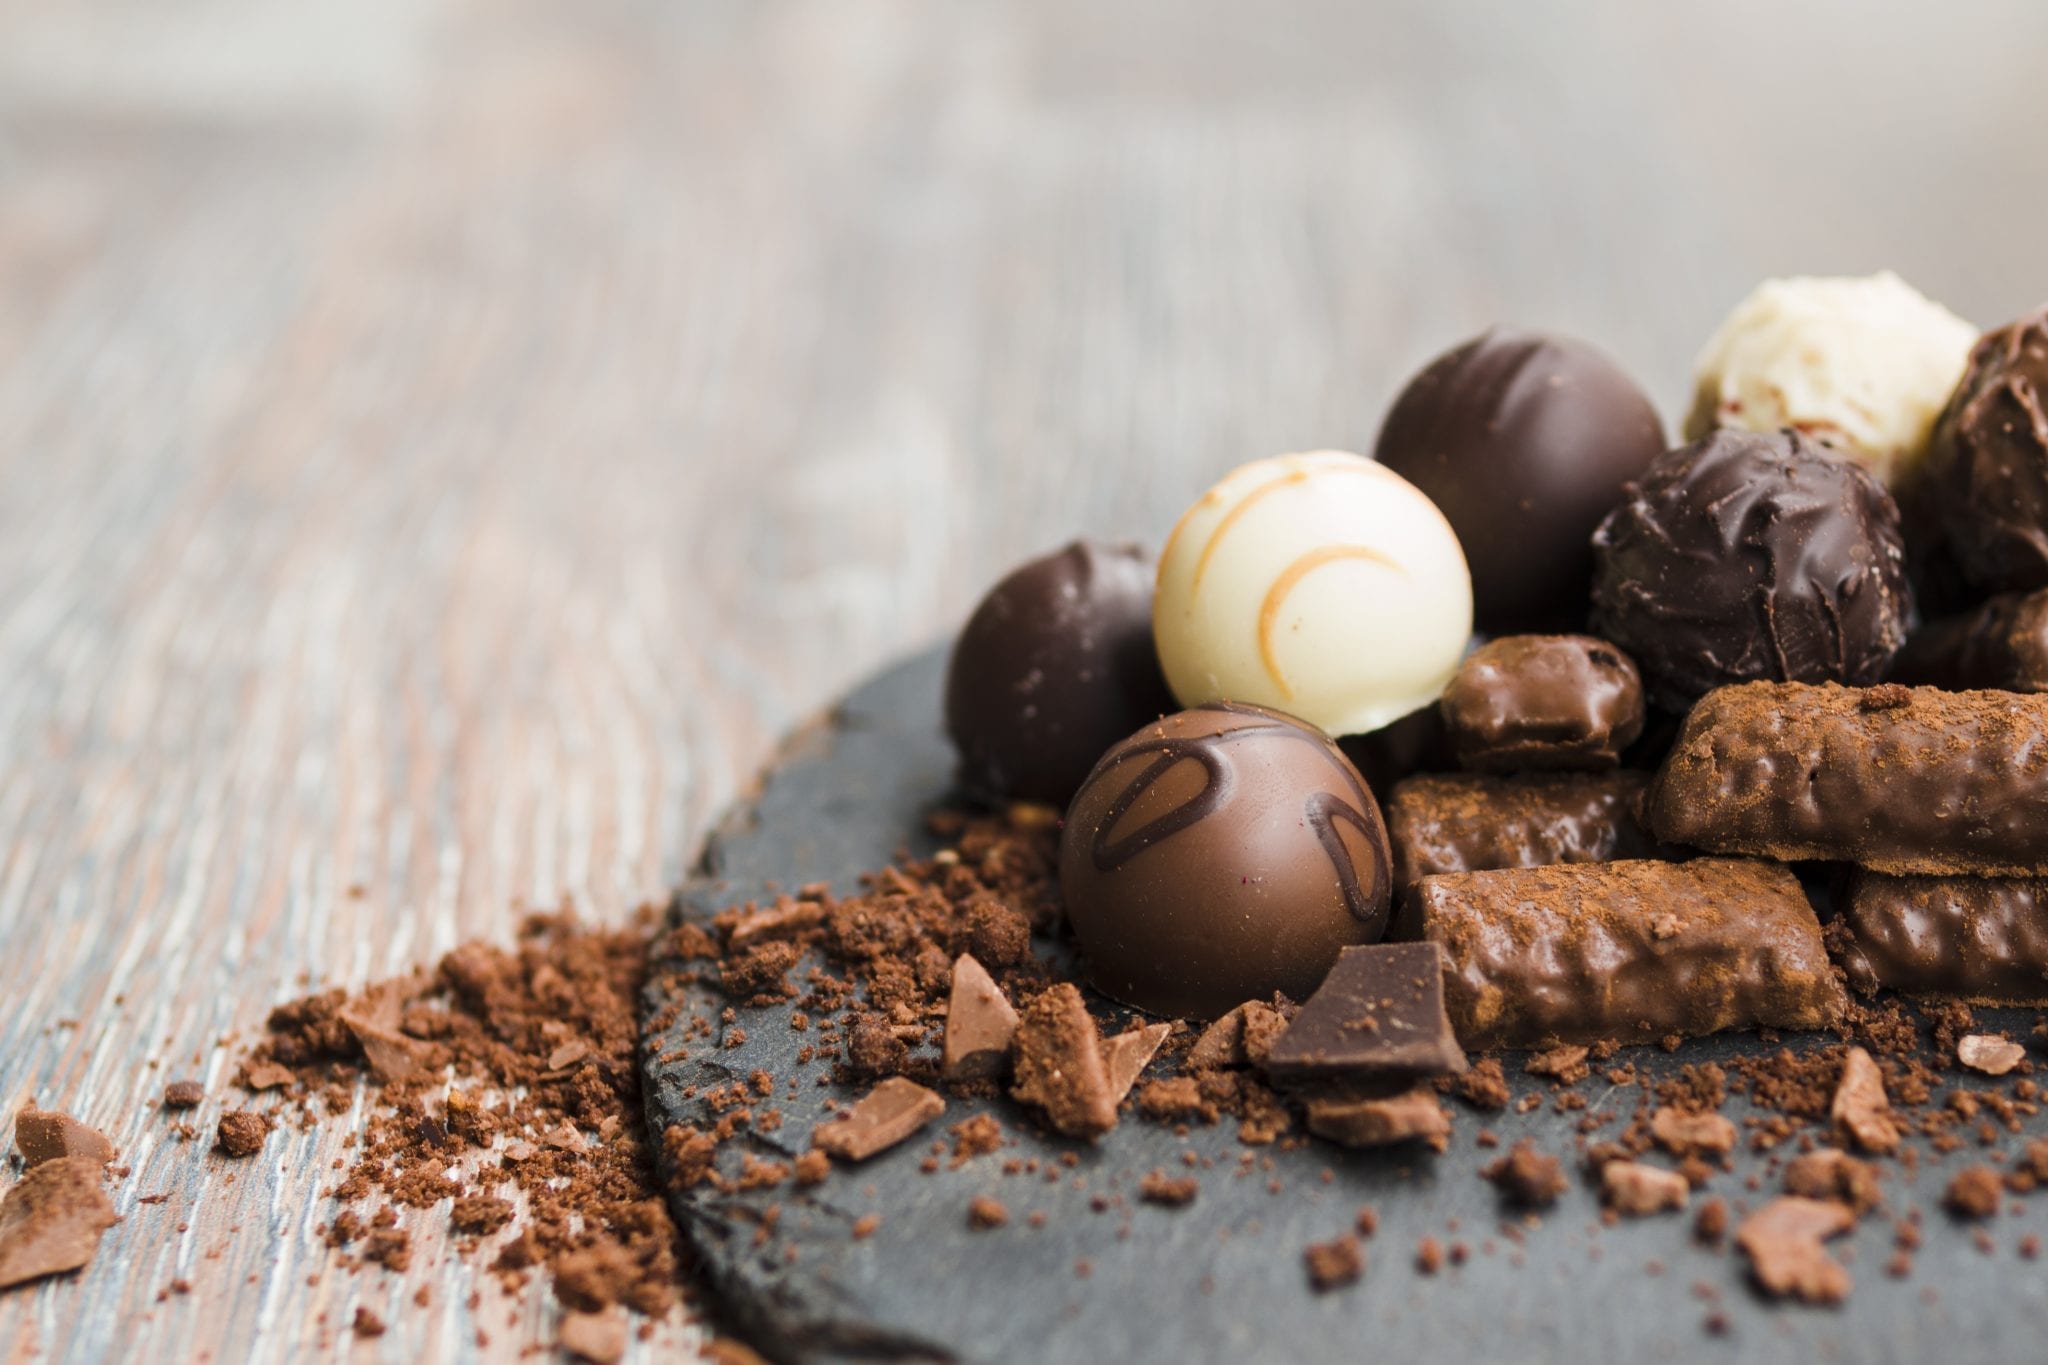 de ce simtim nevoia de ciocolata atunci cand suntem stresati